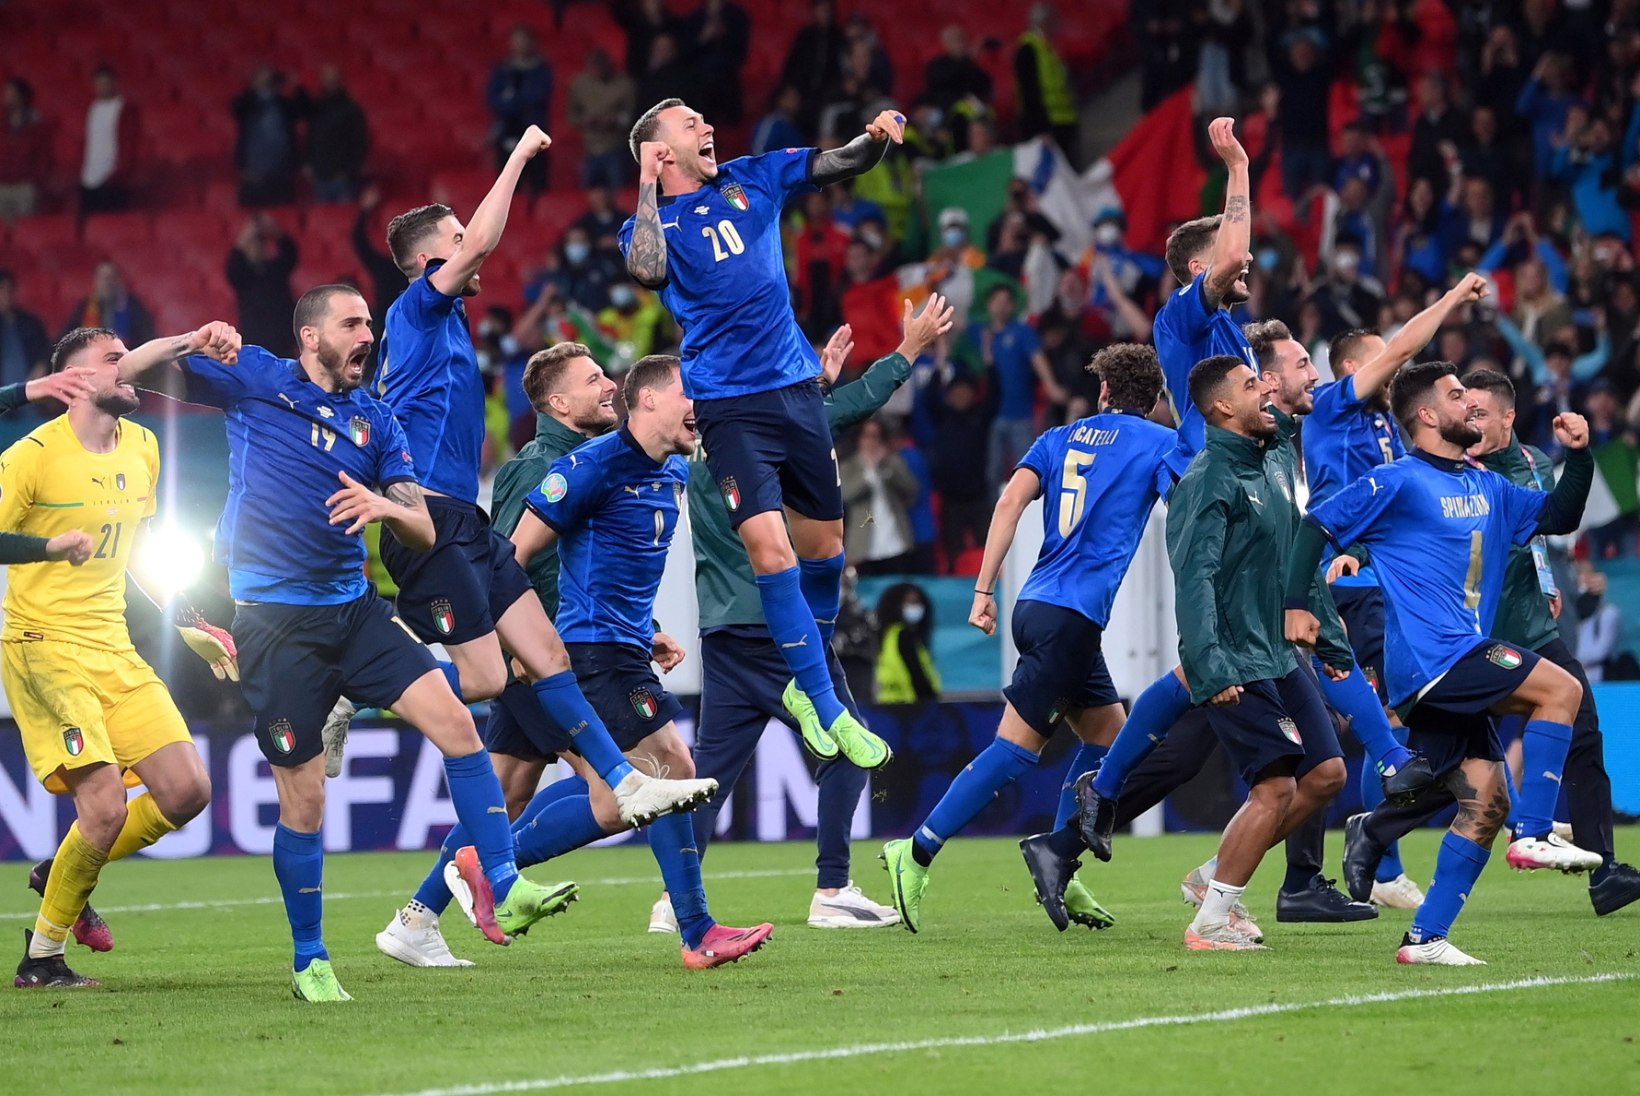 Esimese poolfinaali muljed! Lemsalu: Itaalia oli oma senise vormi hale vari. Liivak: Itaalia tuleb meistriks!